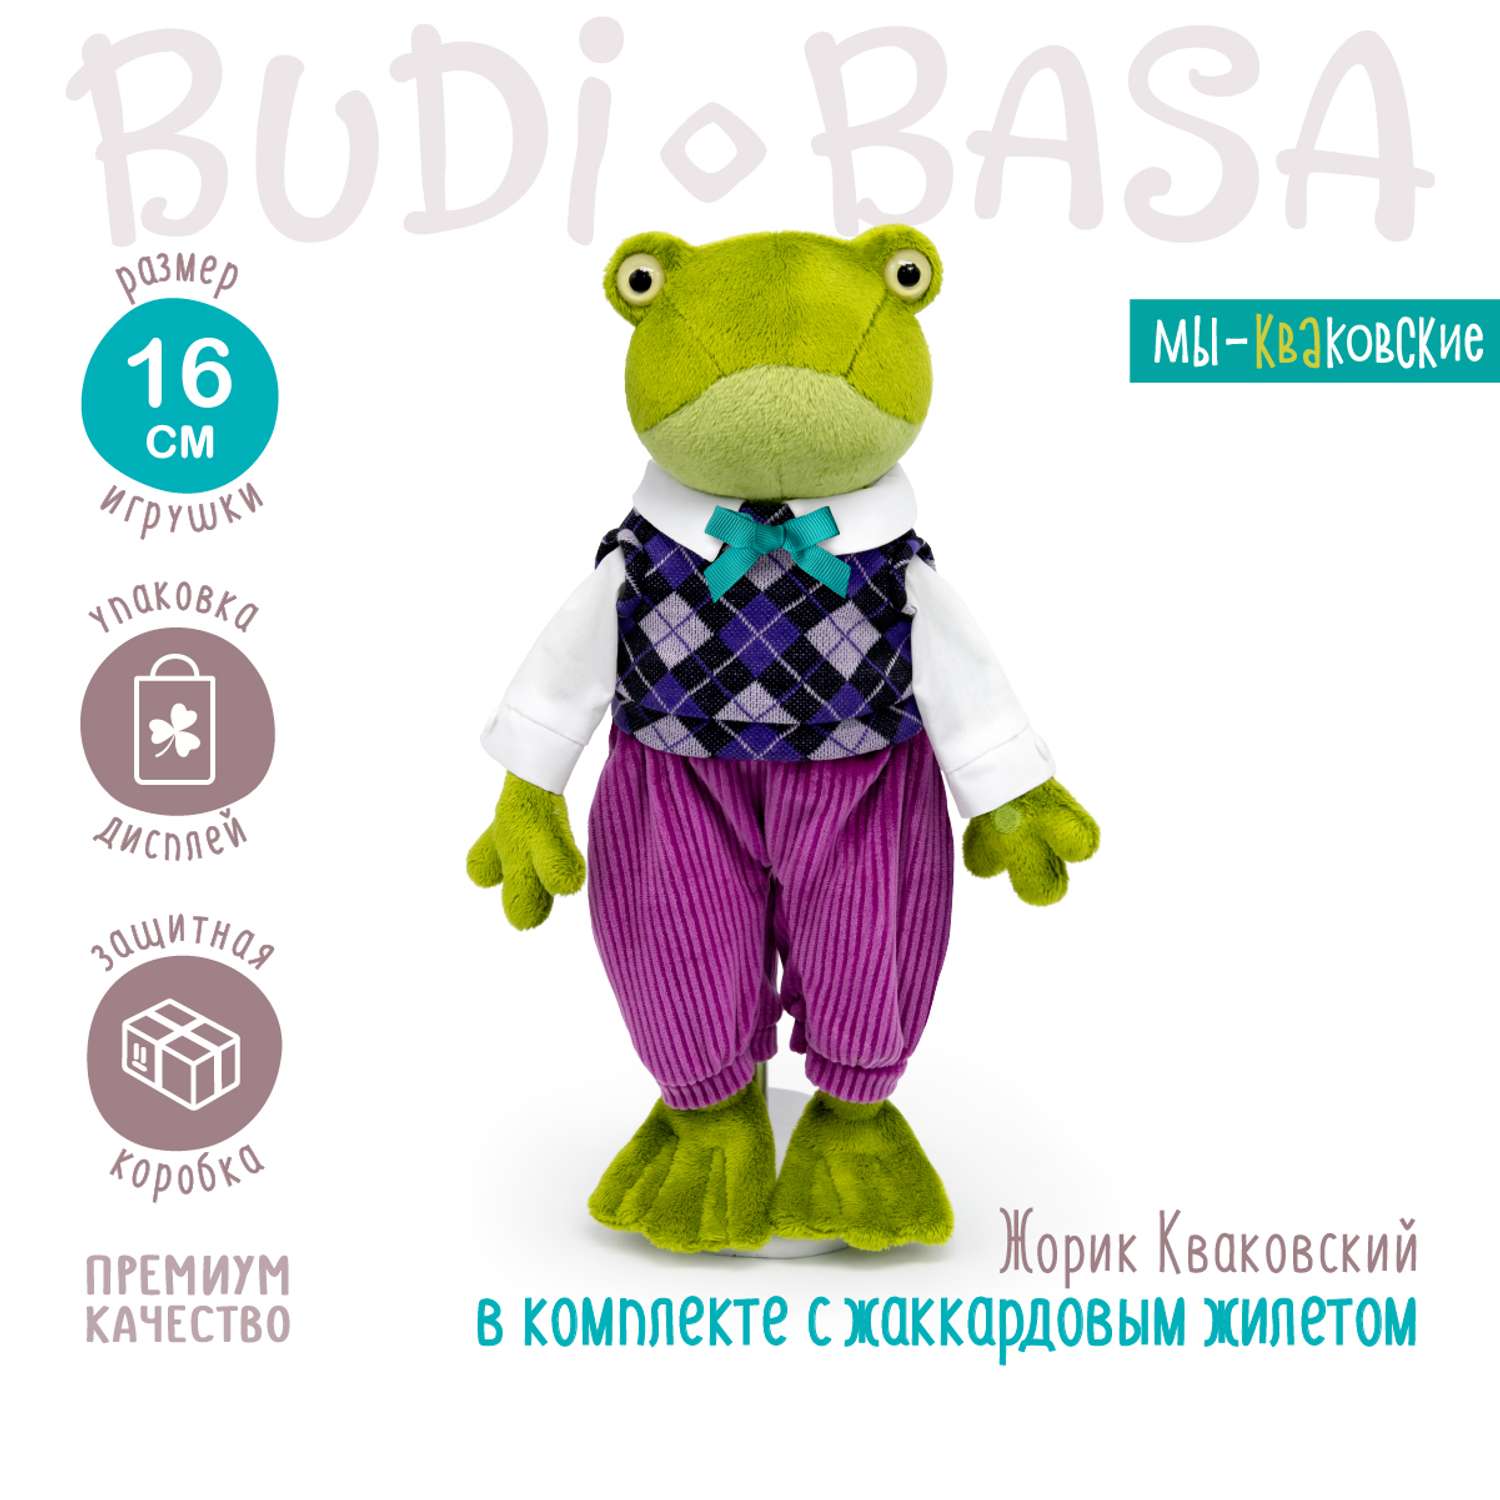 Мягкая игрушка BUDI BASA Лягушка Жорик Кваковский в комплекте с жаккардовым жилетом 16 см Kva16-03 - фото 2